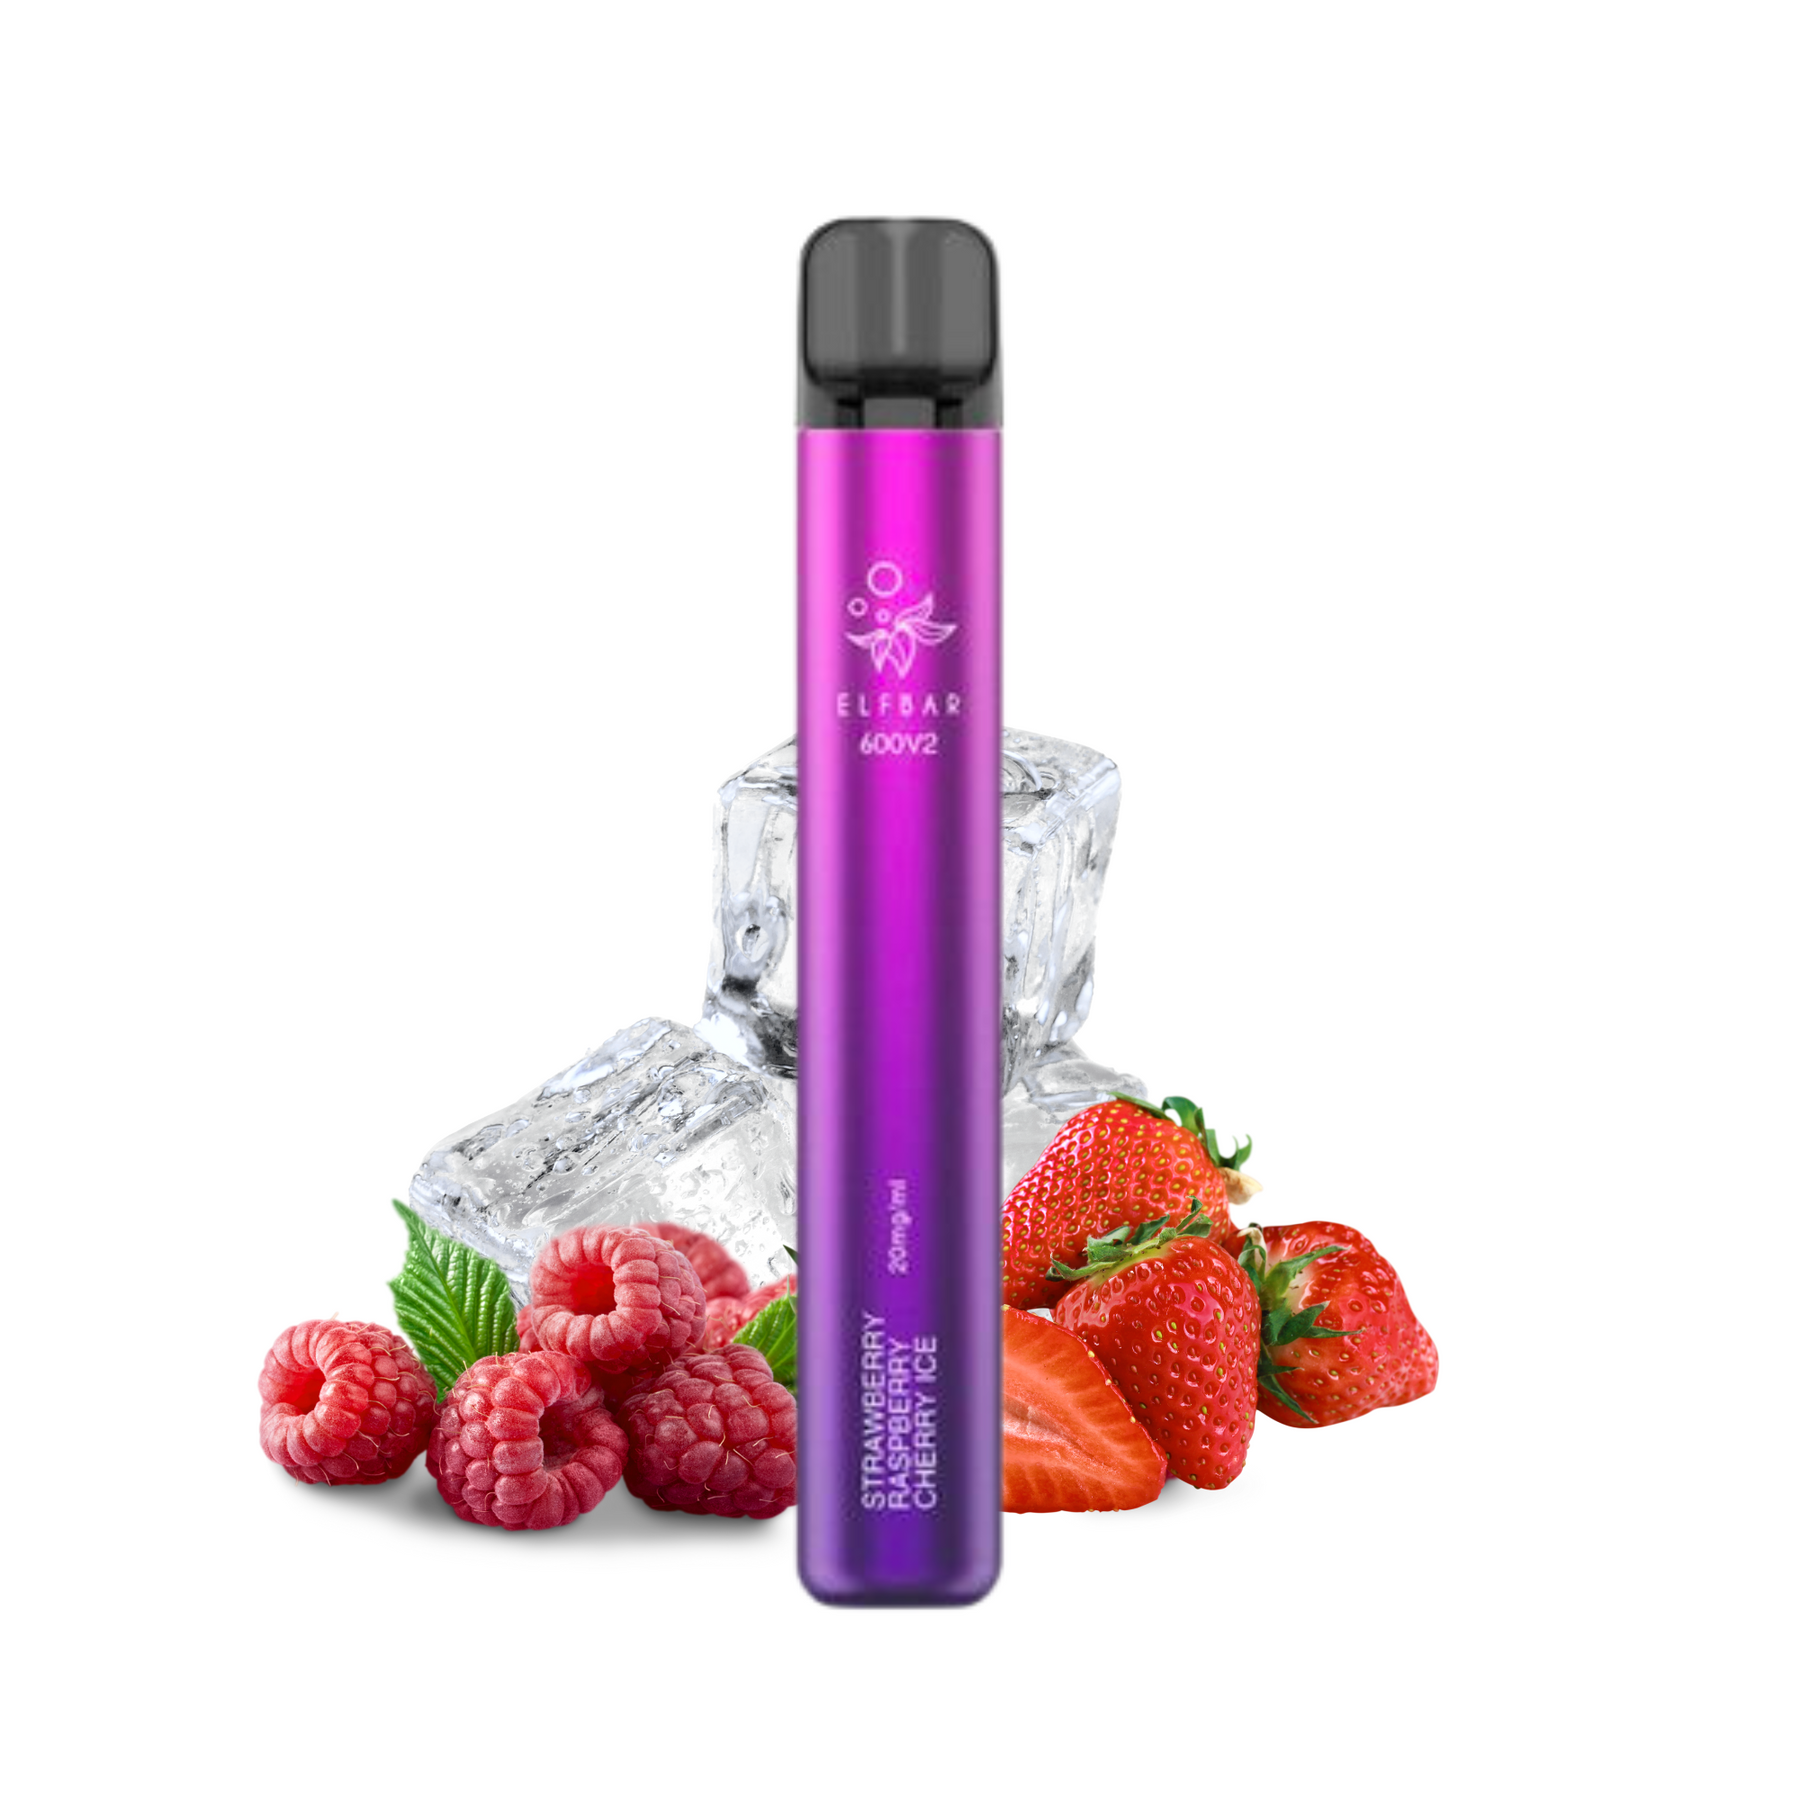 Elf Bar 600 V2 - Strawberry Rasp Cherry Ice